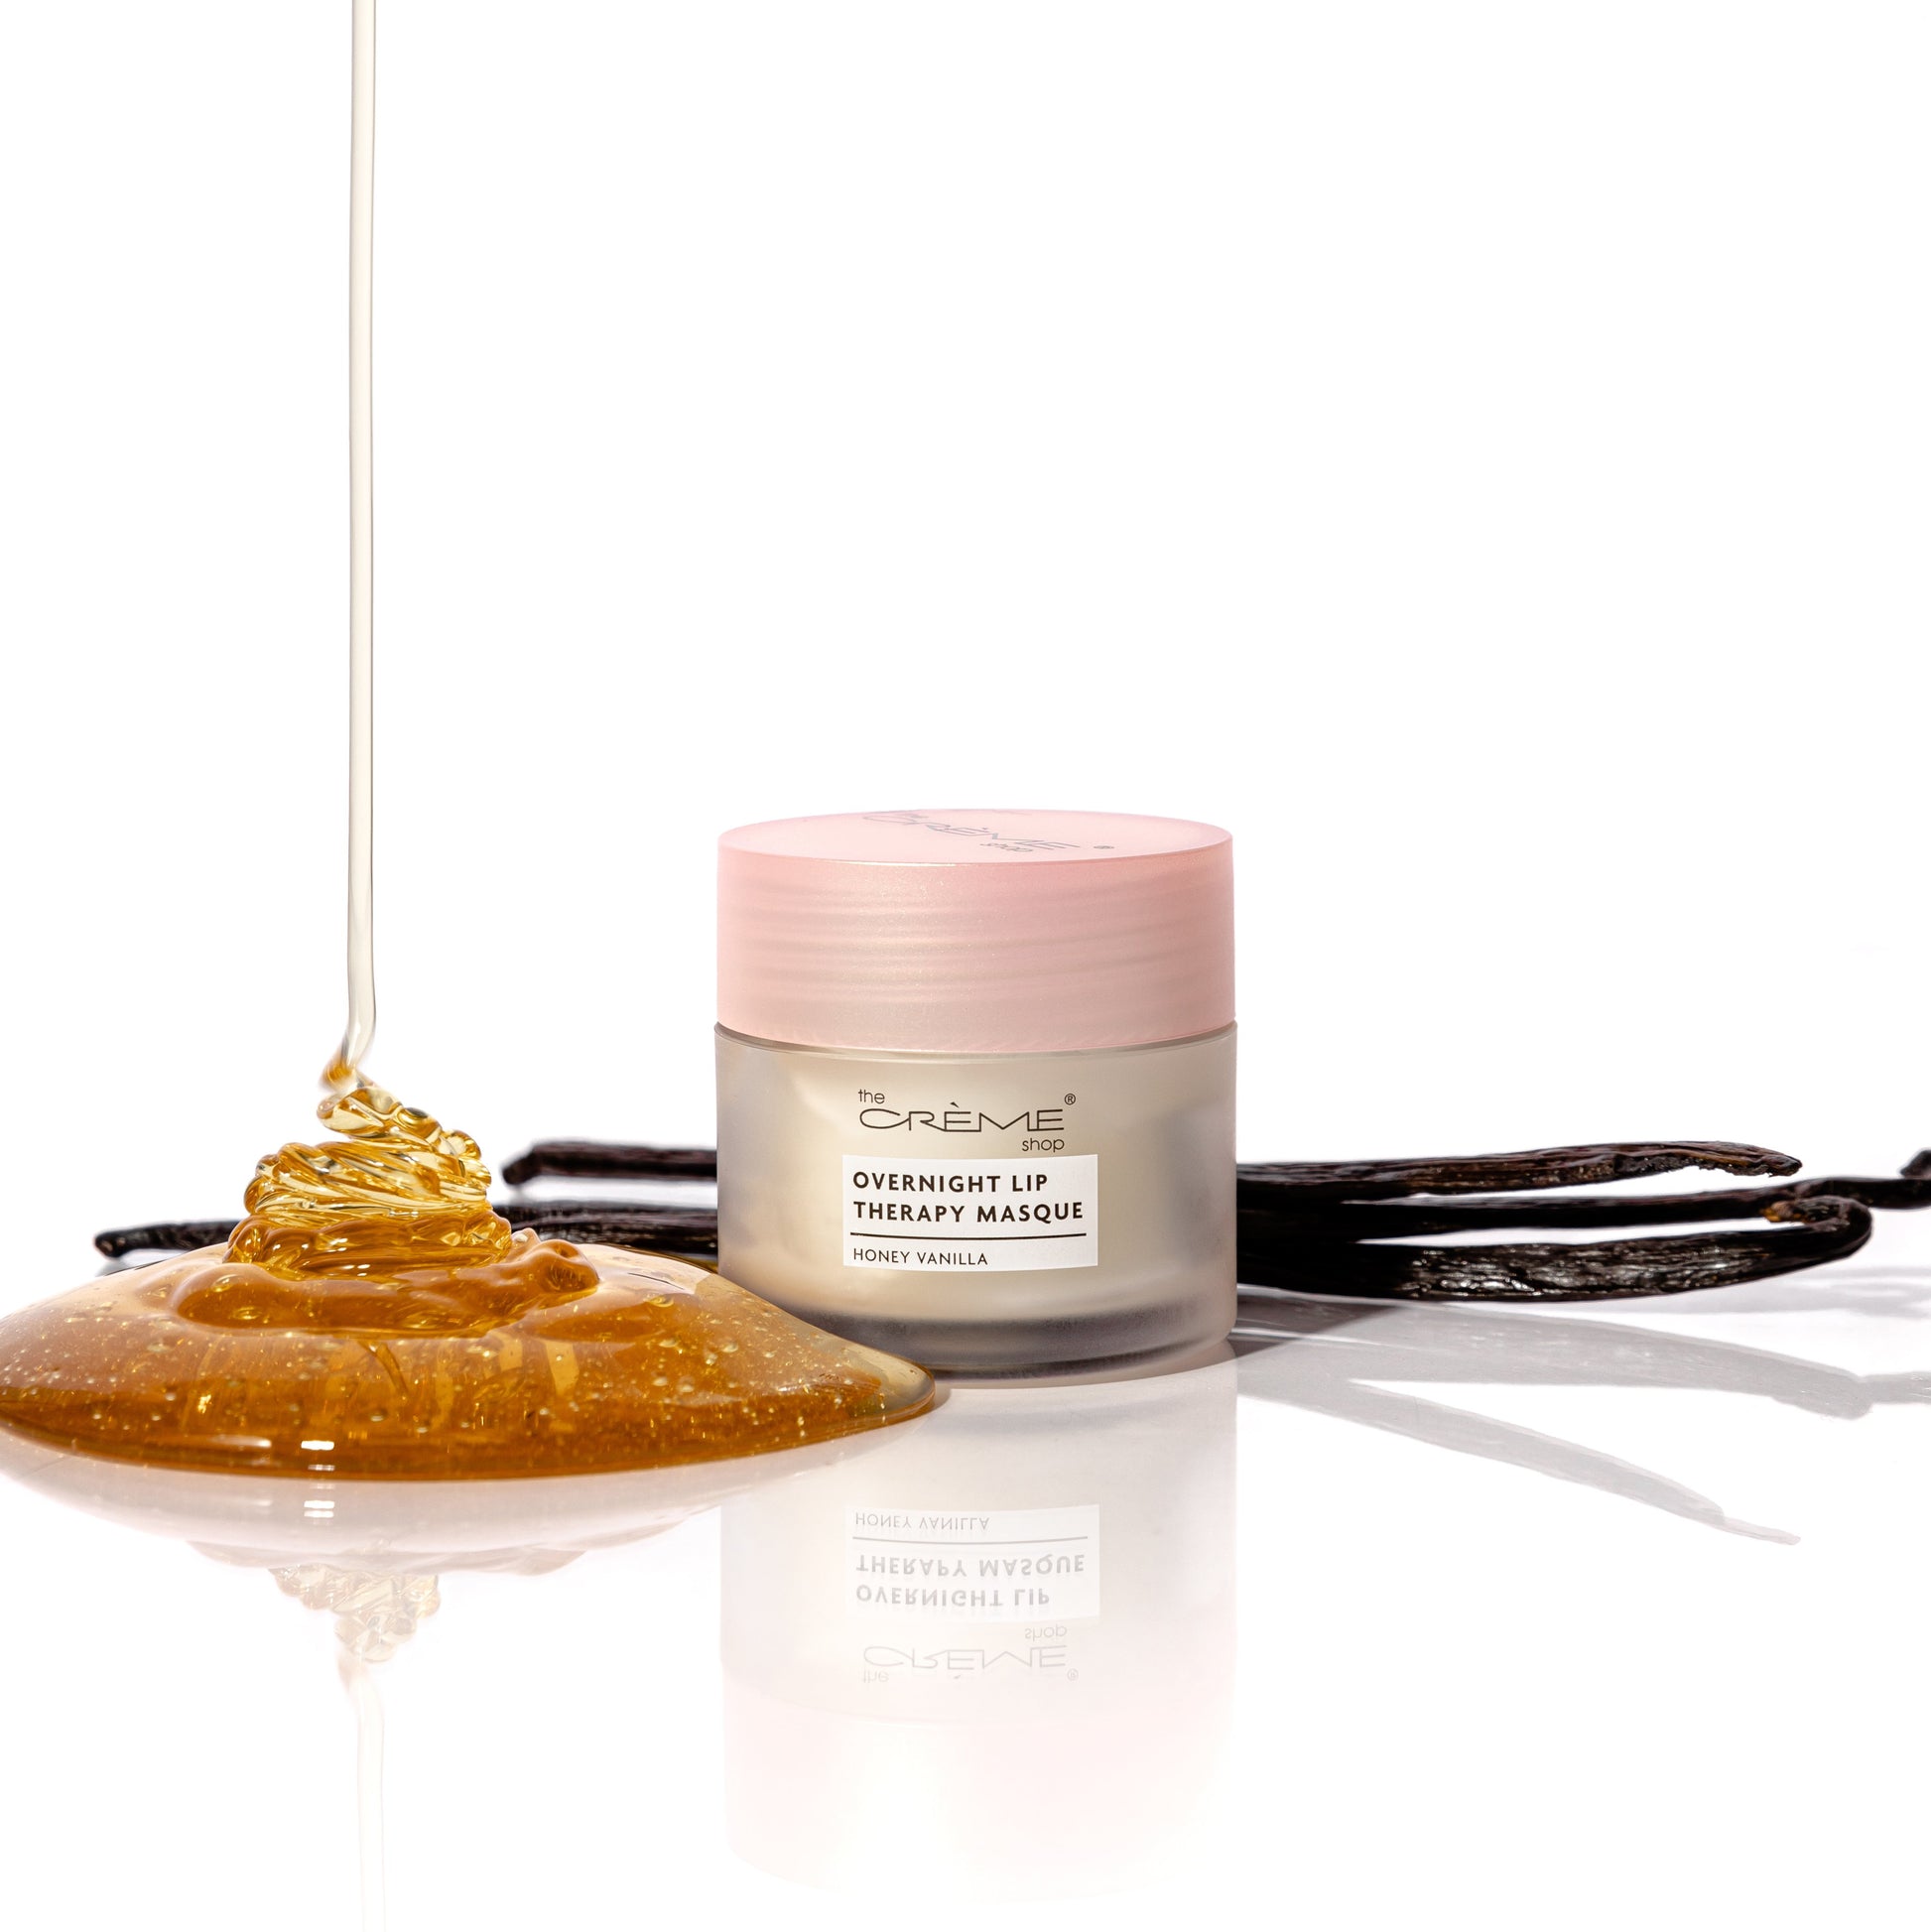 Overnight Lip Therapy Masque Honey Vanilla - The Crème Shop